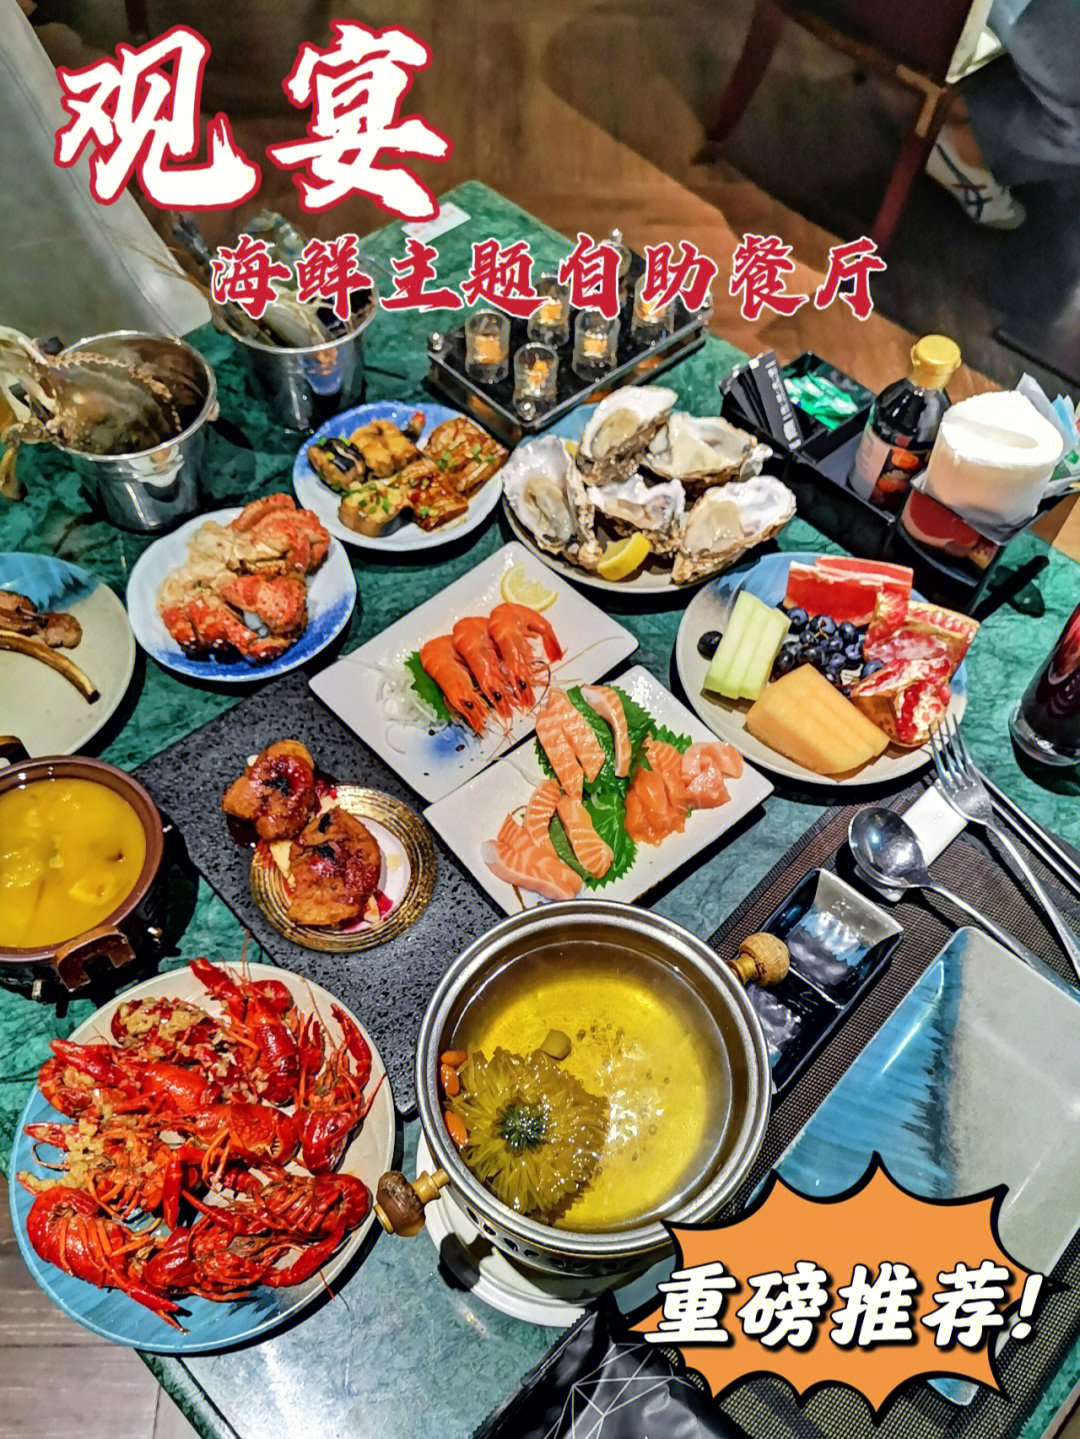 97观宴·海鲜美学主题自助餐厅可以说是天津最豪华的自助餐厅之一了